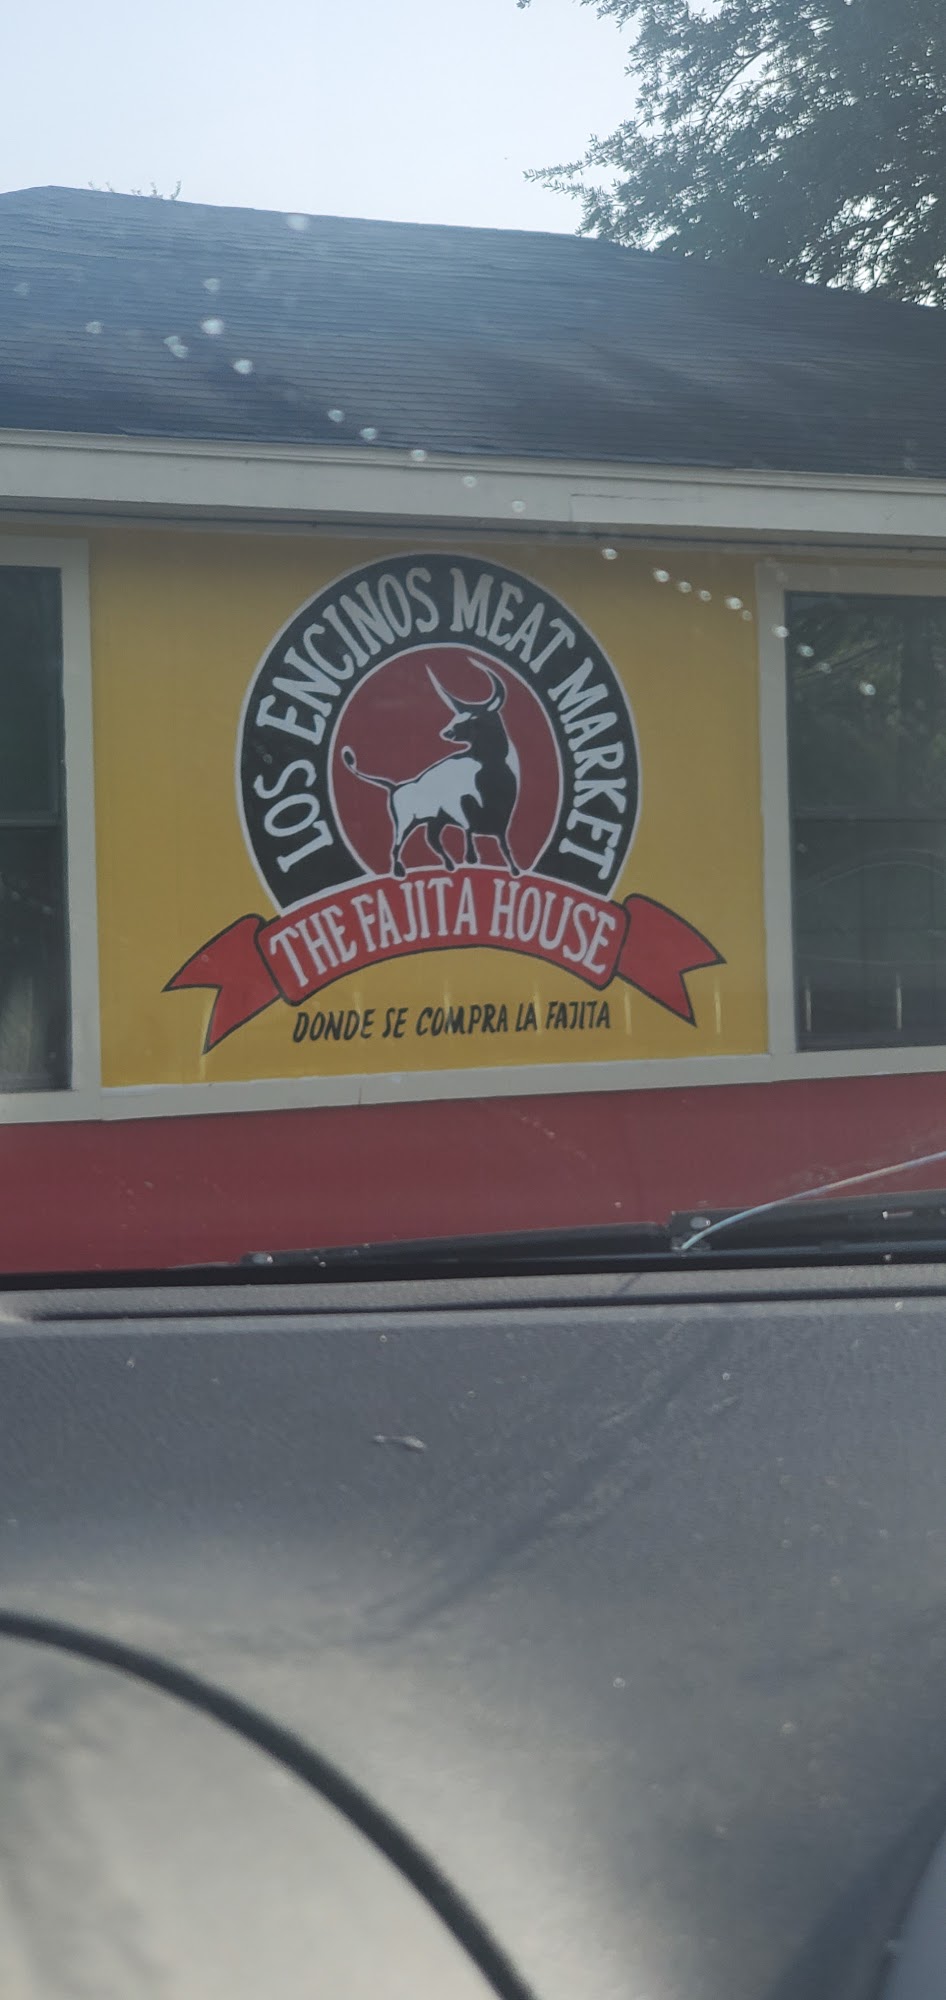 Los Encinos meat market